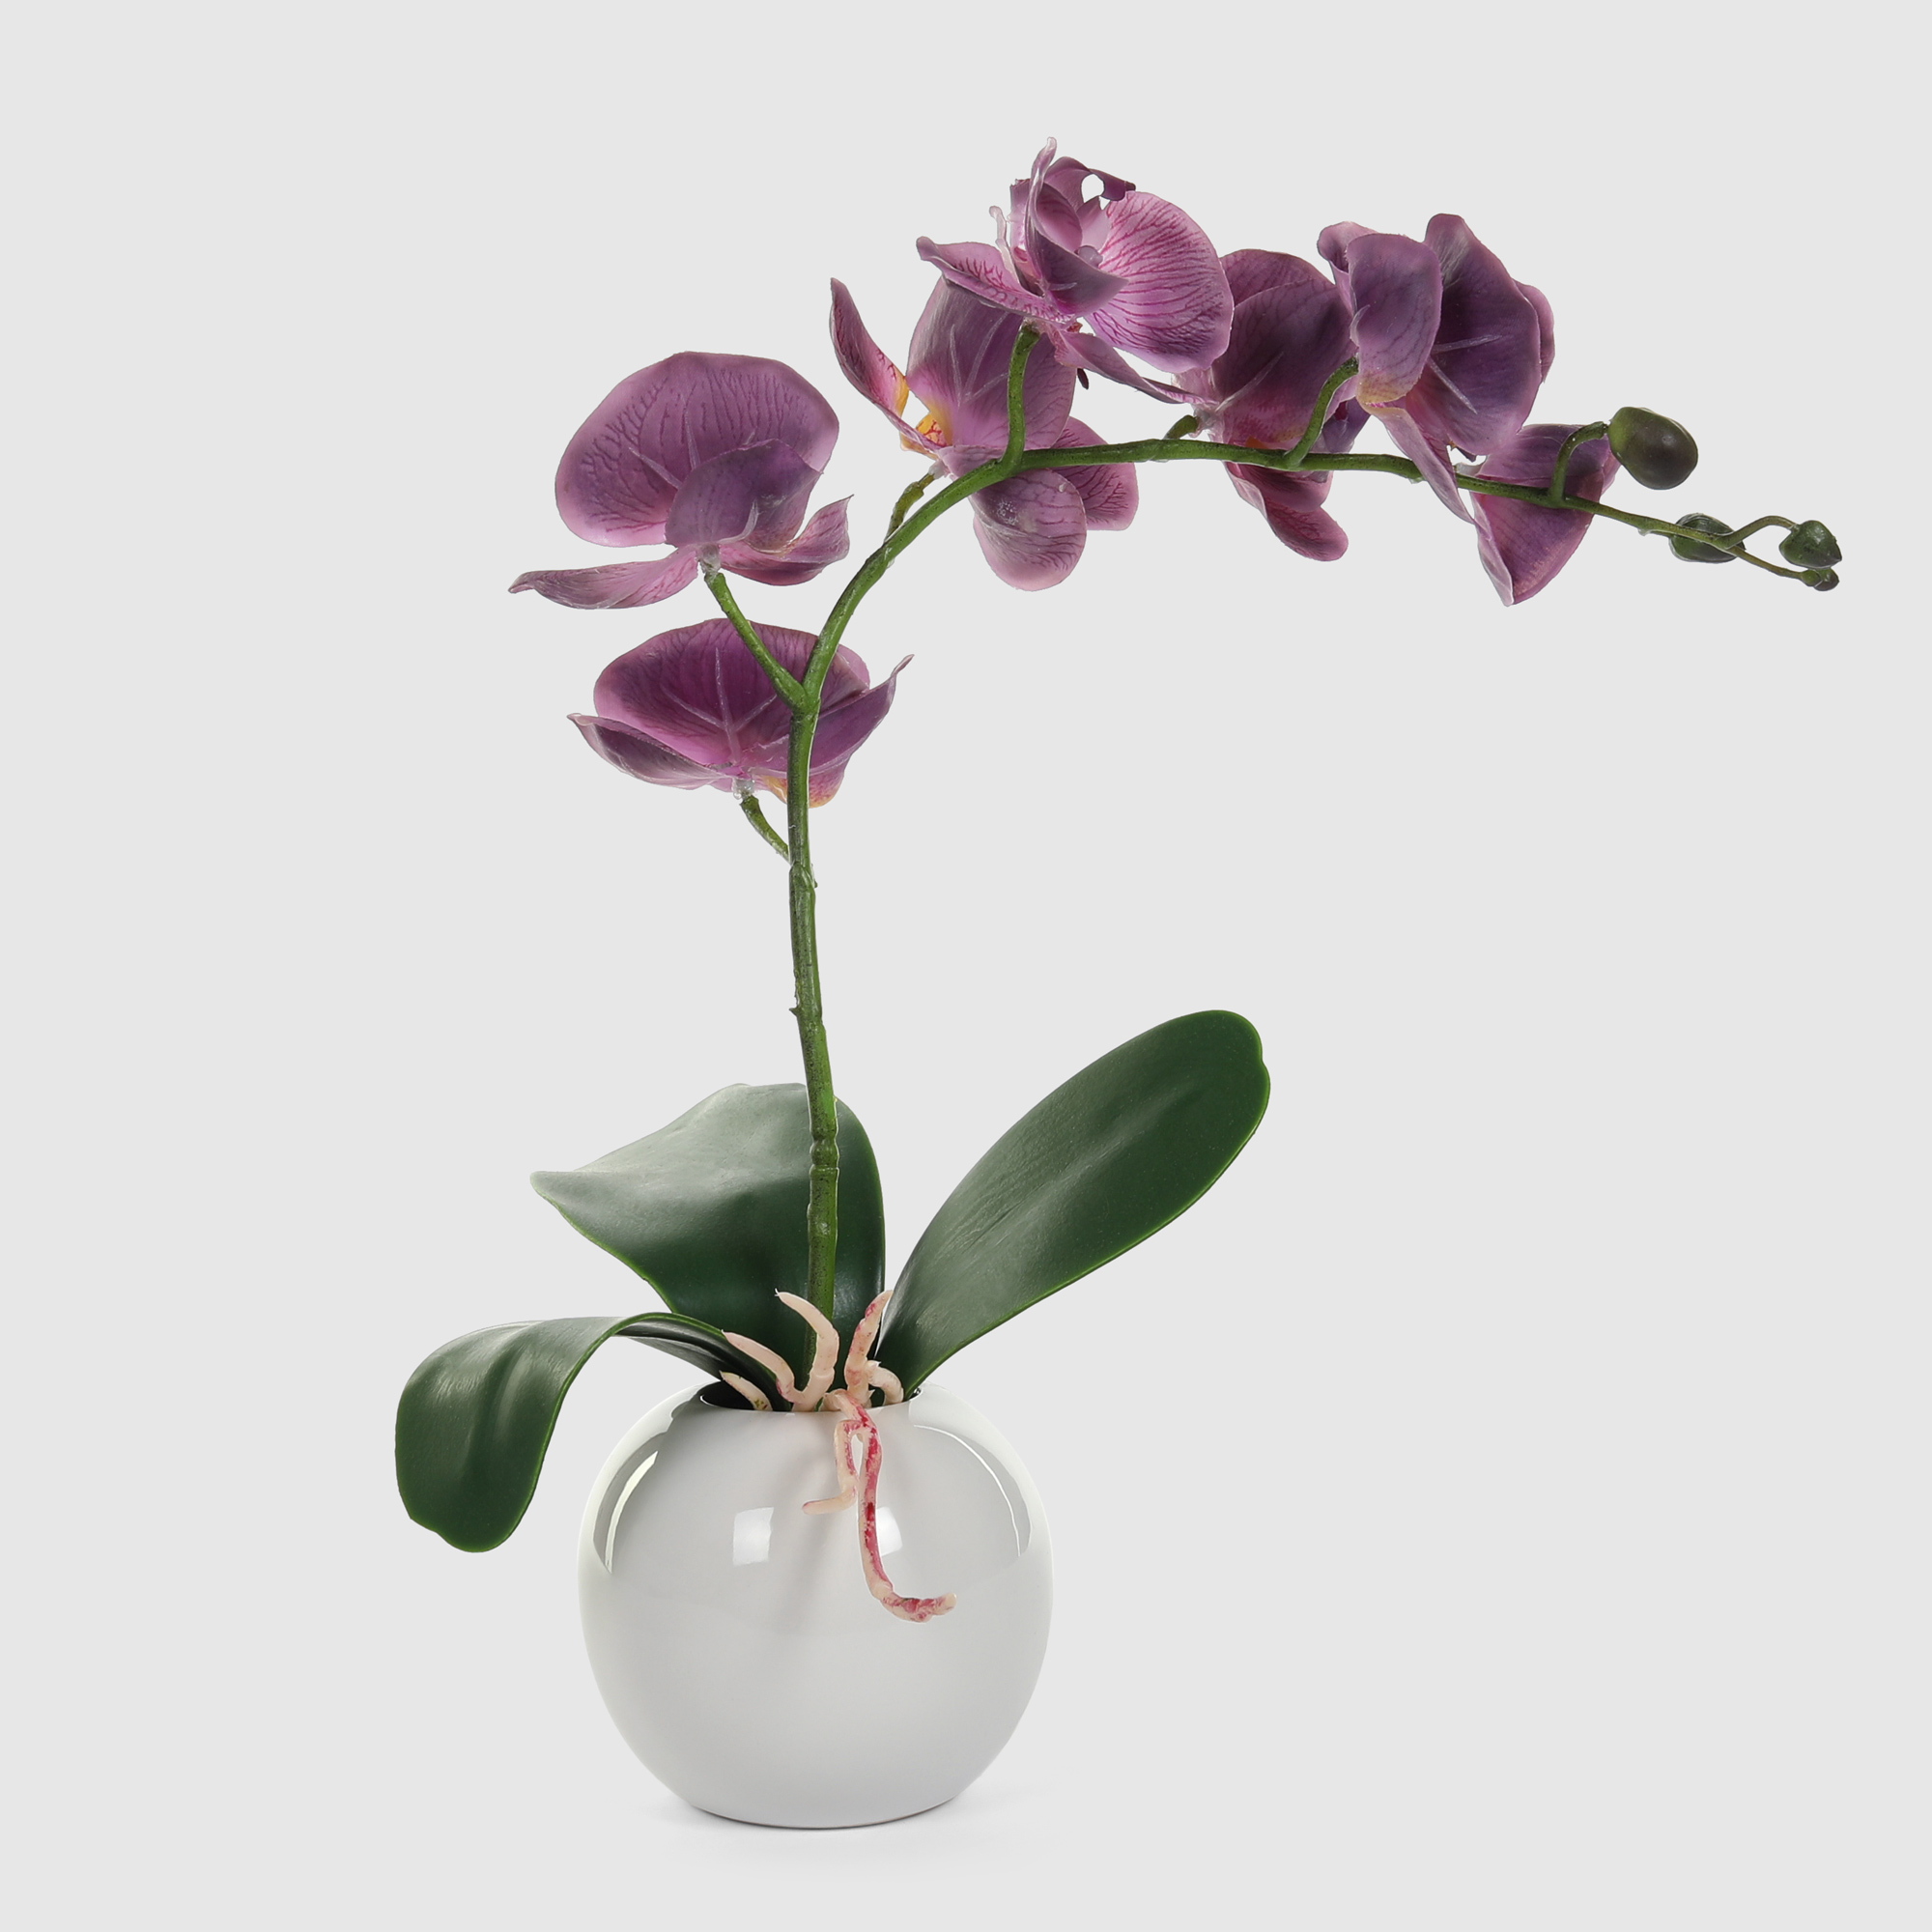 Орхидея в белом кашпо Конэко-О 572_10163185 40 см